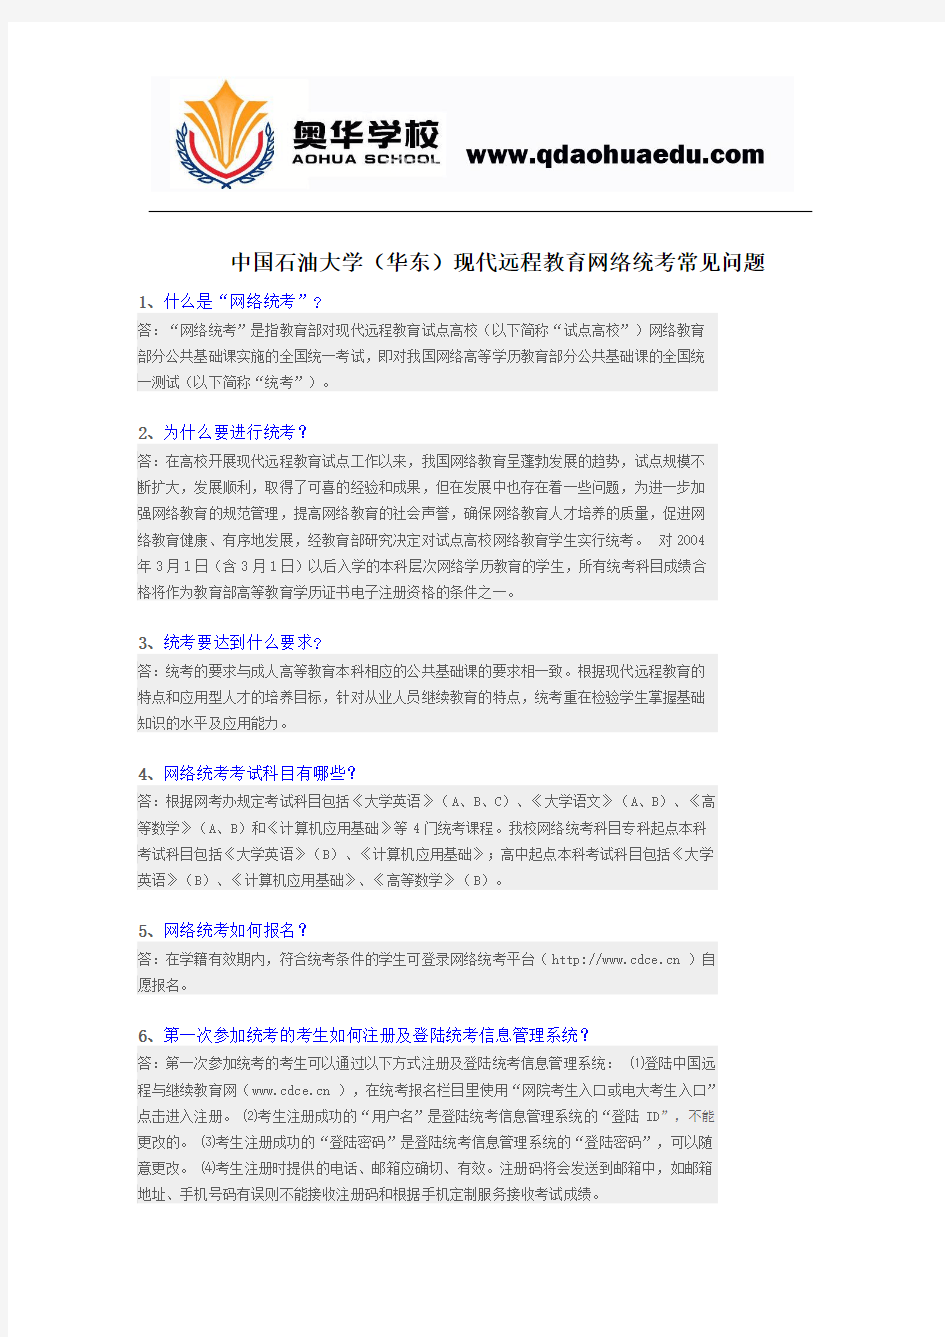 中国石油大学(华东)现代远程教育网络统考常见问题